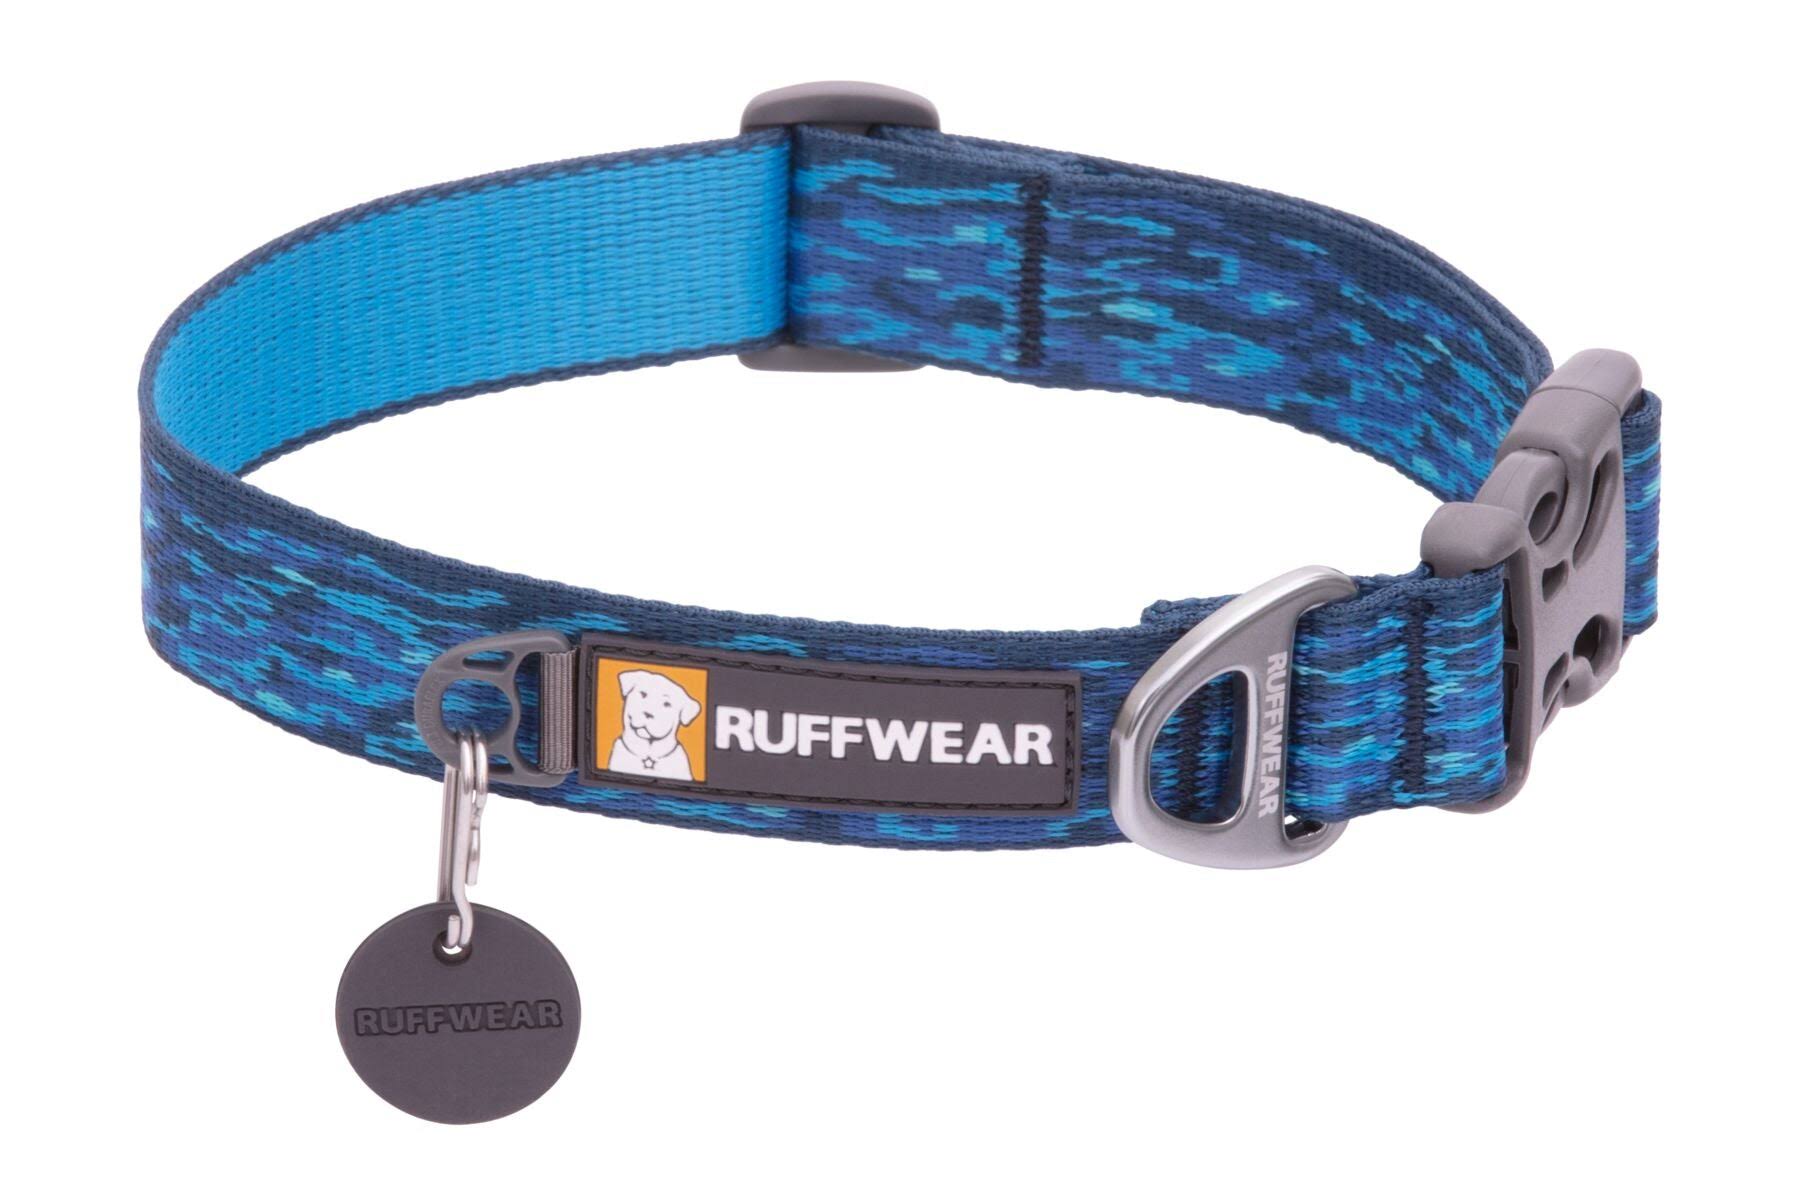 Ruffwear Flat Out Dog Collar